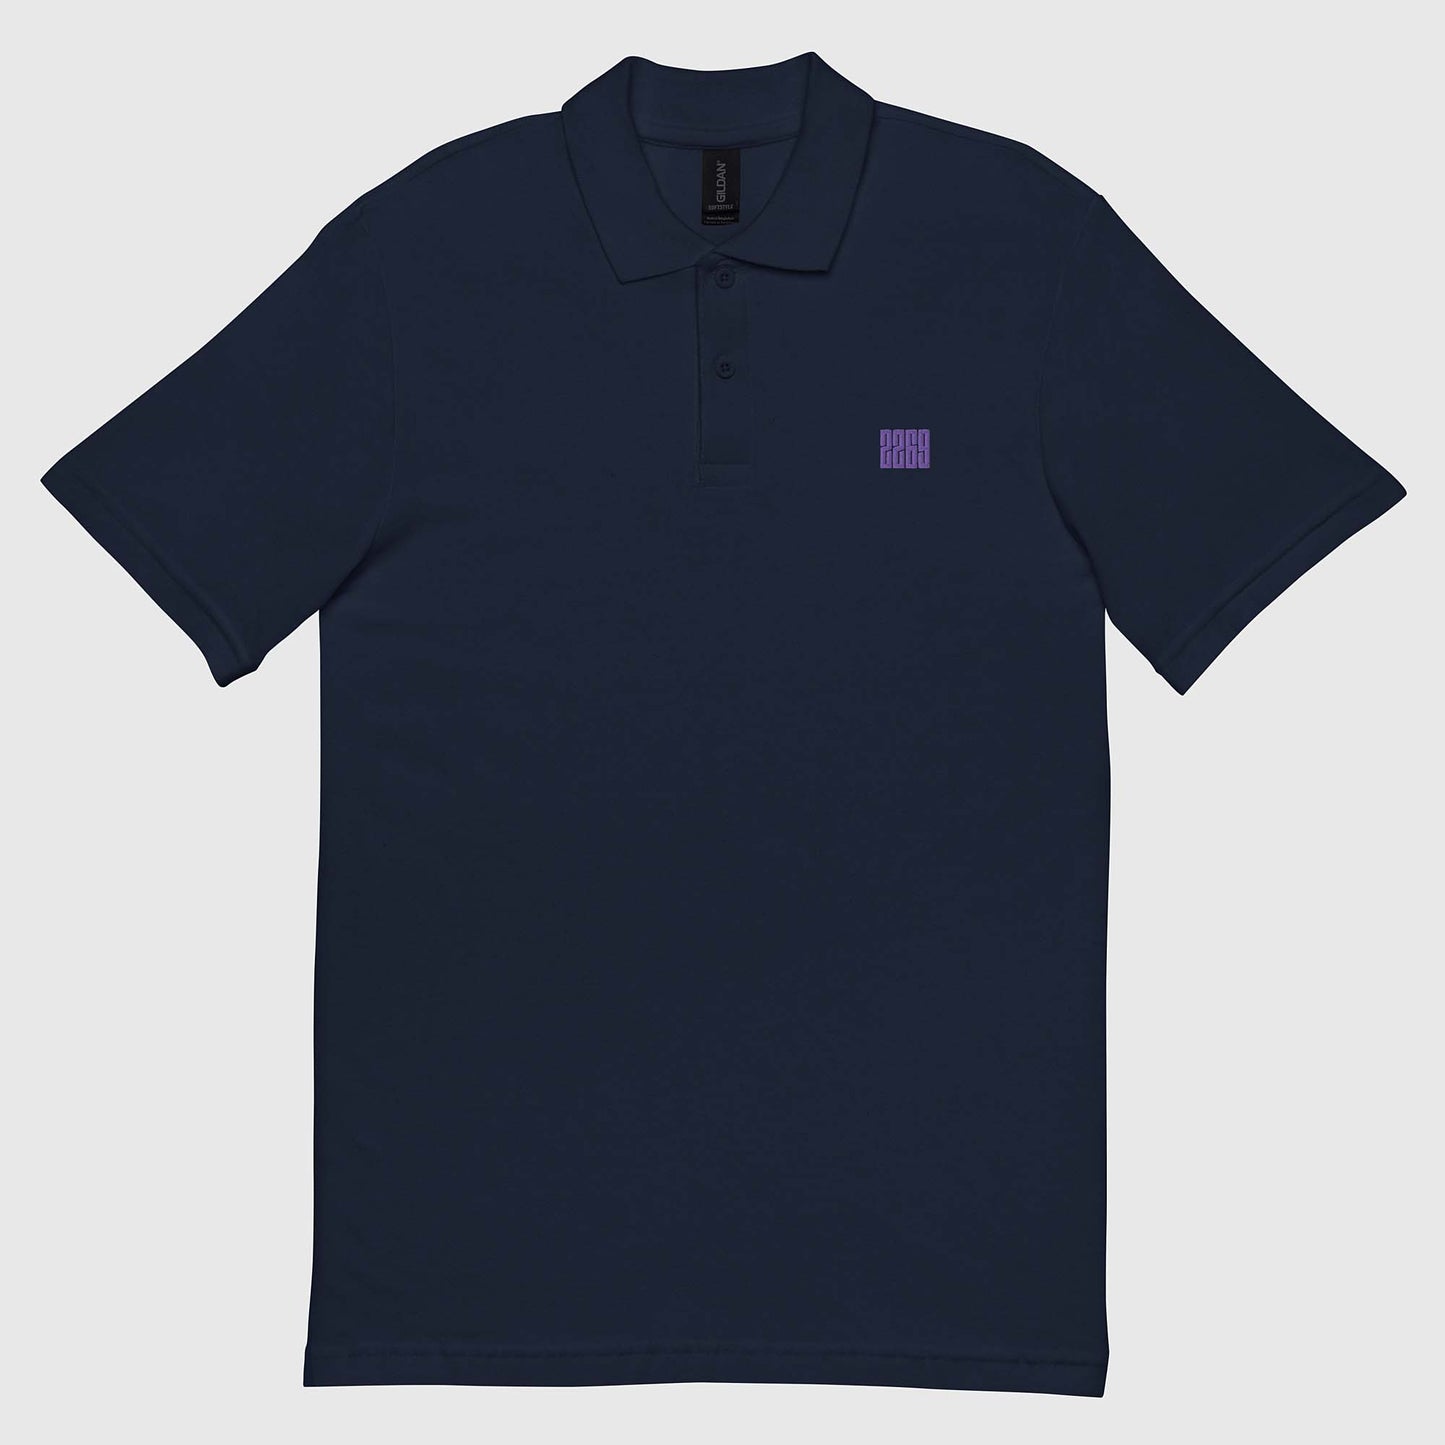 Men's navy pique polo shirt with embroidered 2269 logo